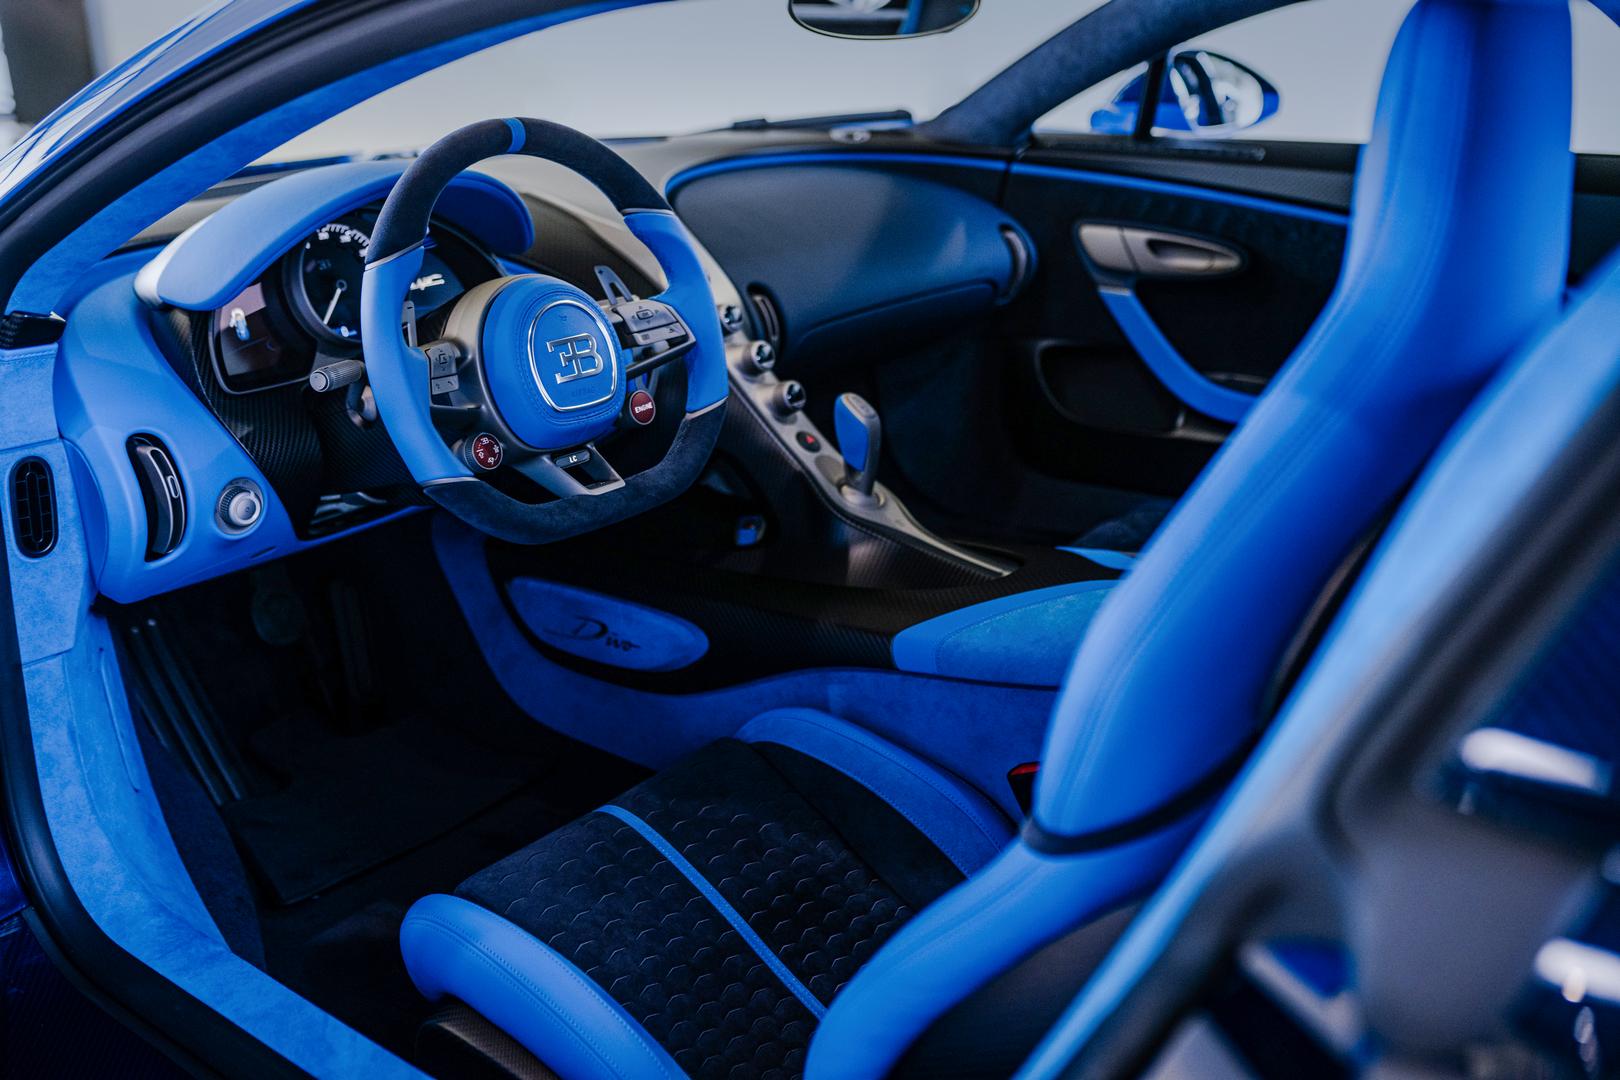 Bugatti Divo interior